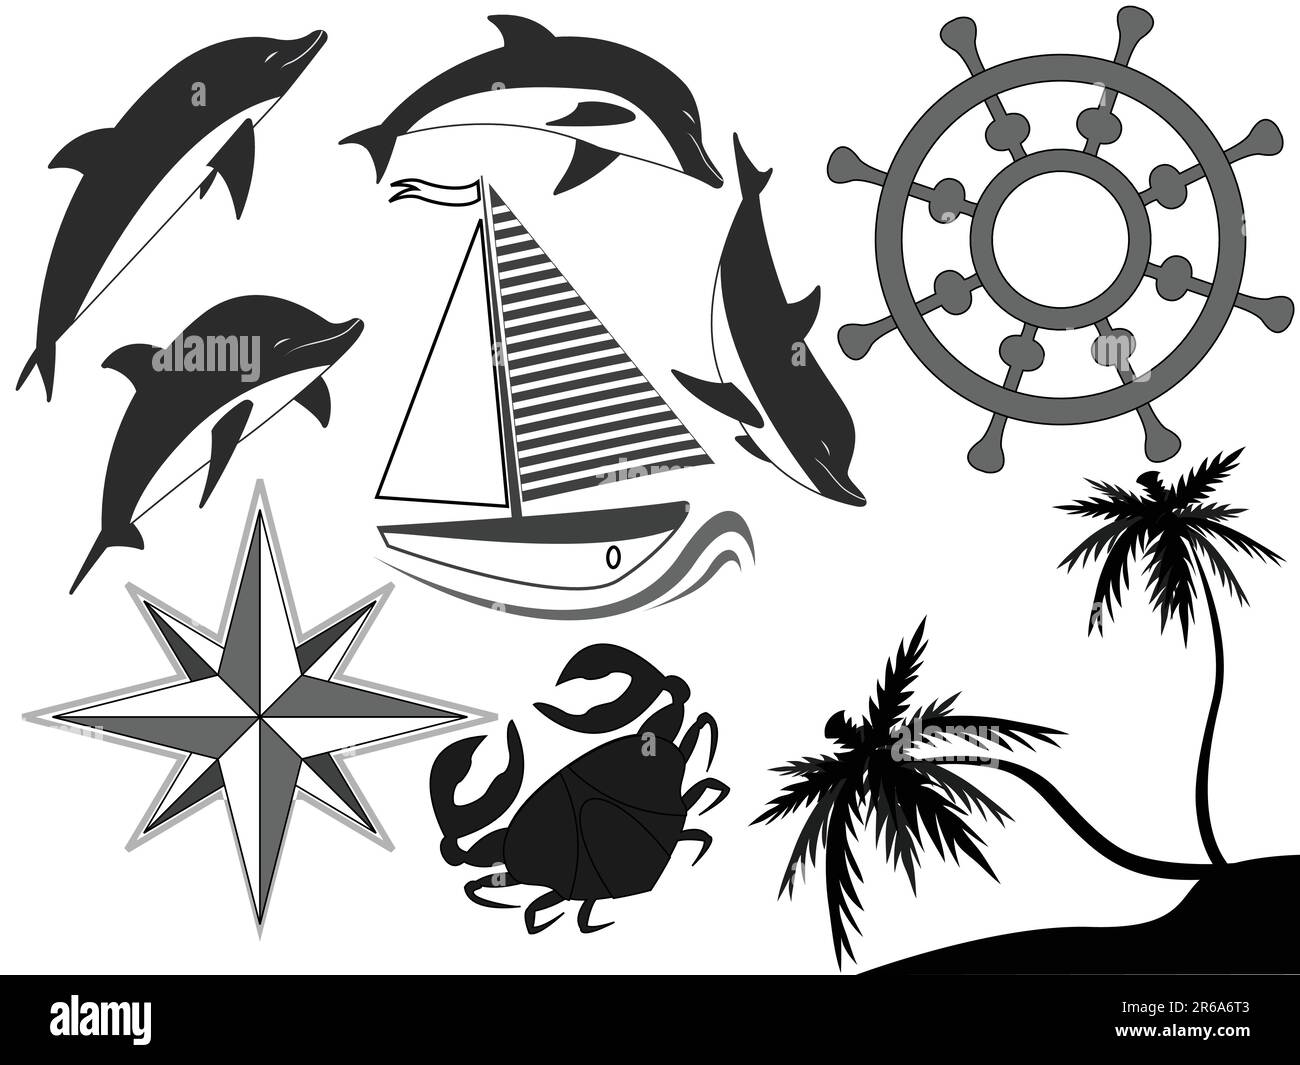 Símbolos de mar en blanco y negro - delfines, un volante, un yate en un ...